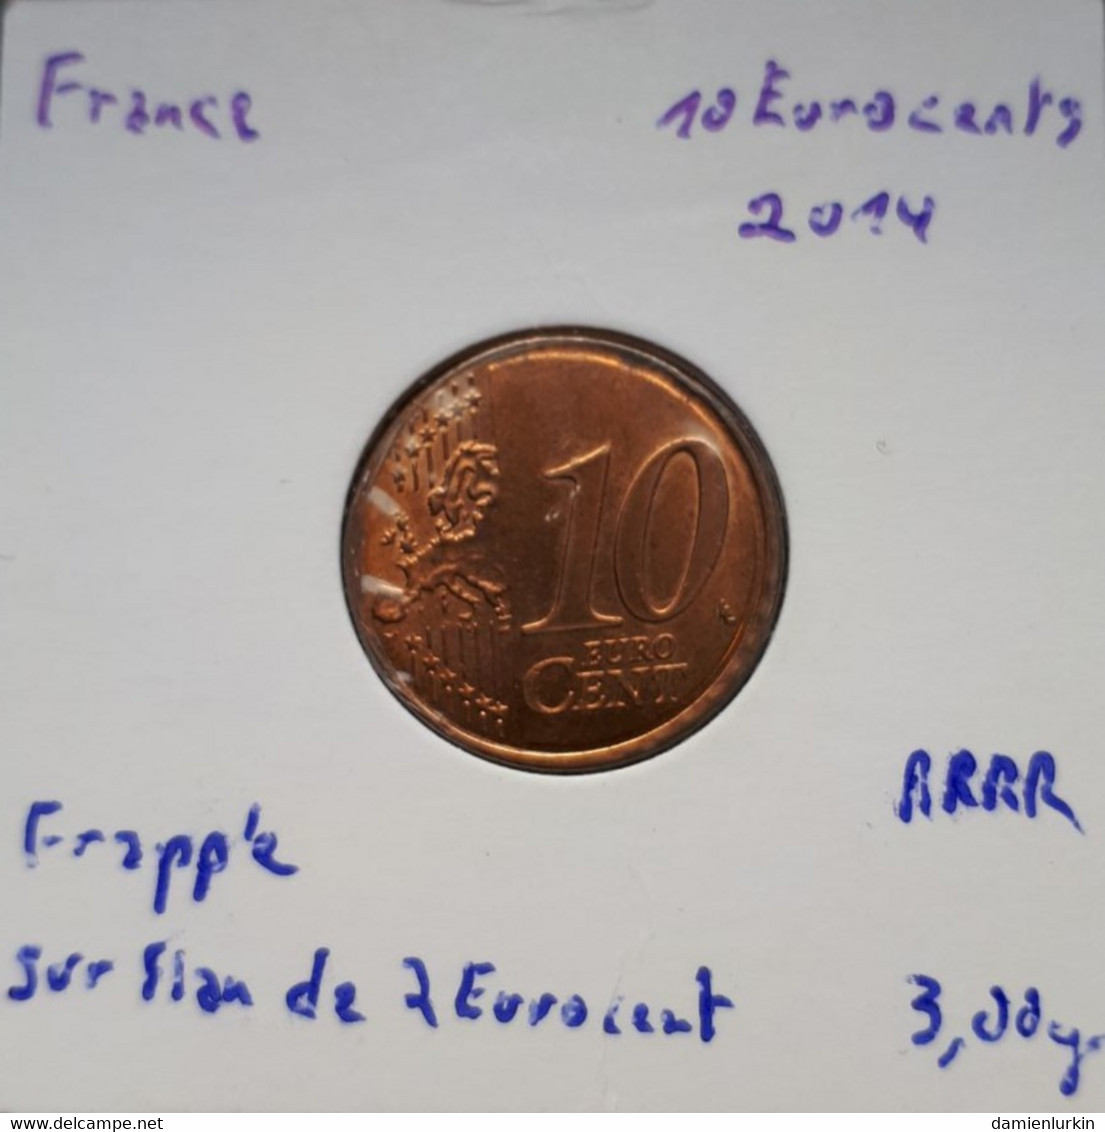 --PROMO 300€-- FRANCE EXCEPTIONNELLE 10 EURO CENT 2014 FRAPPEE SUR FLAN CUIVRE NON METALLIQUE !!!!! --LIRE DESCRIPTIF-- - Variëteiten En Curiosa